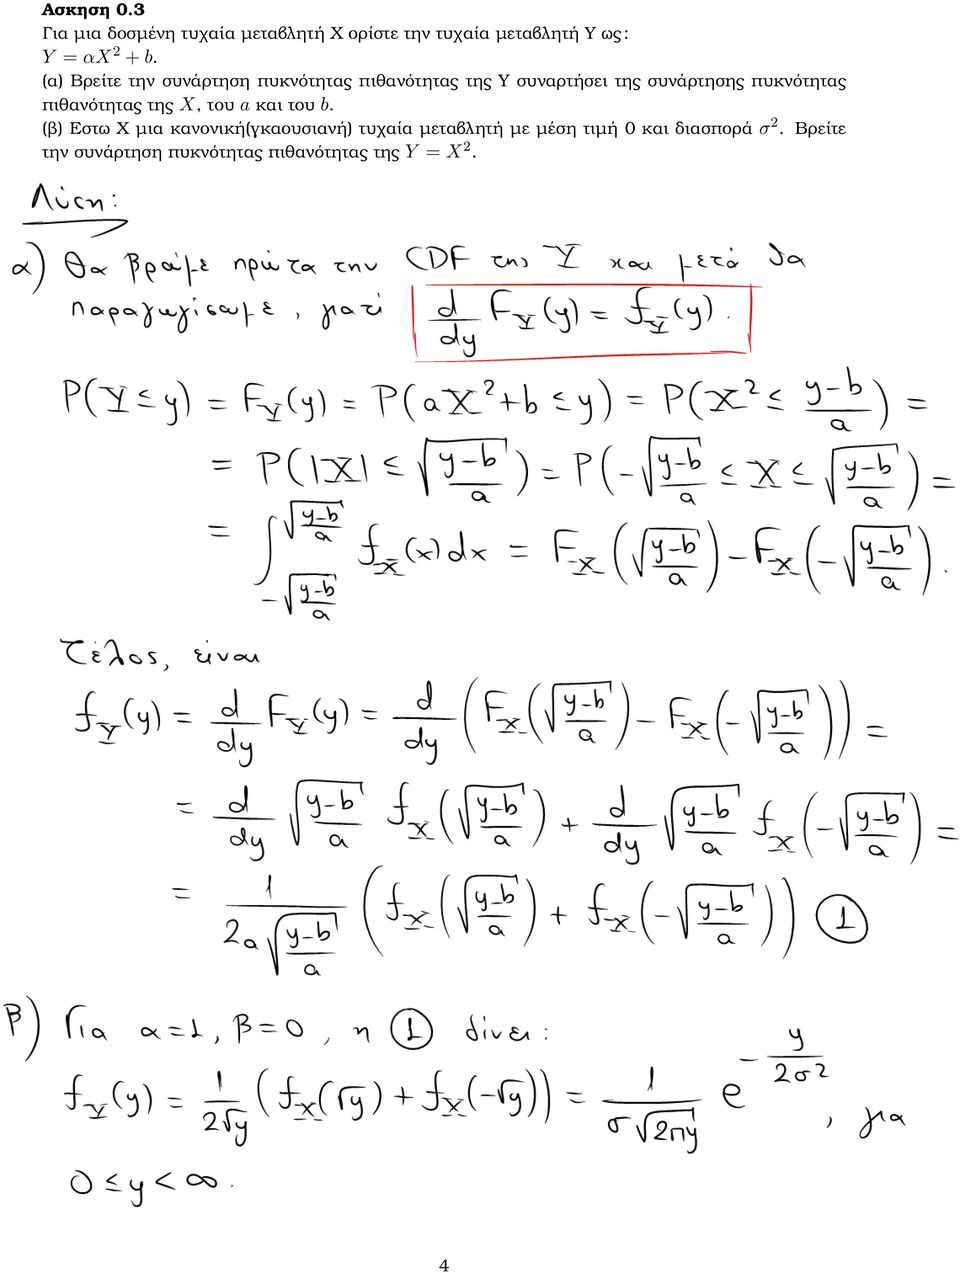 (α) Βρείτε την συνάρτηση πυκνότητας πιθανότητας της Υ συναρτήσει της συνάρτησης πυκνότητας